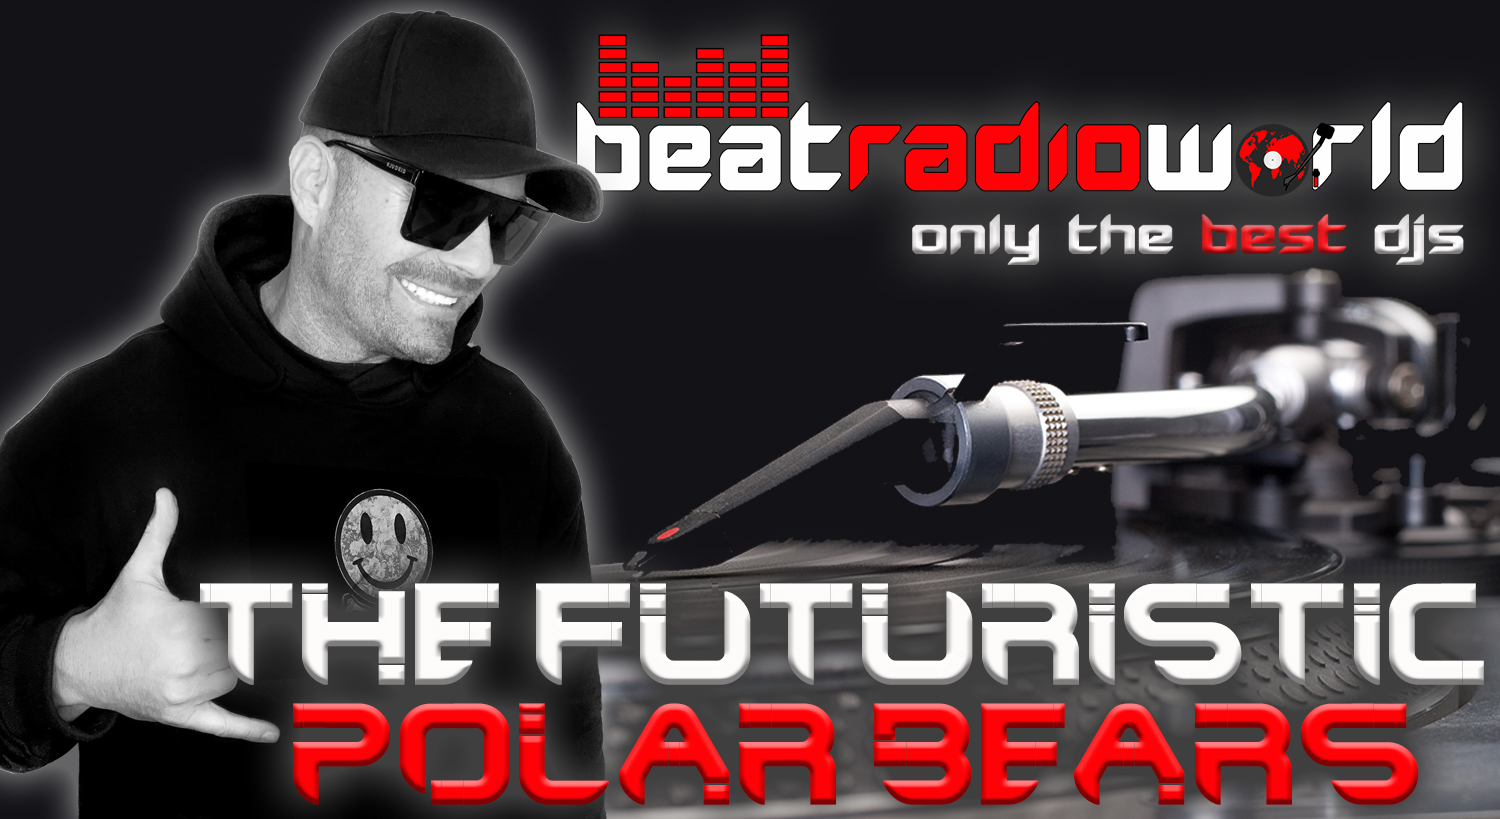 The-Futuristic-Polar-Bears